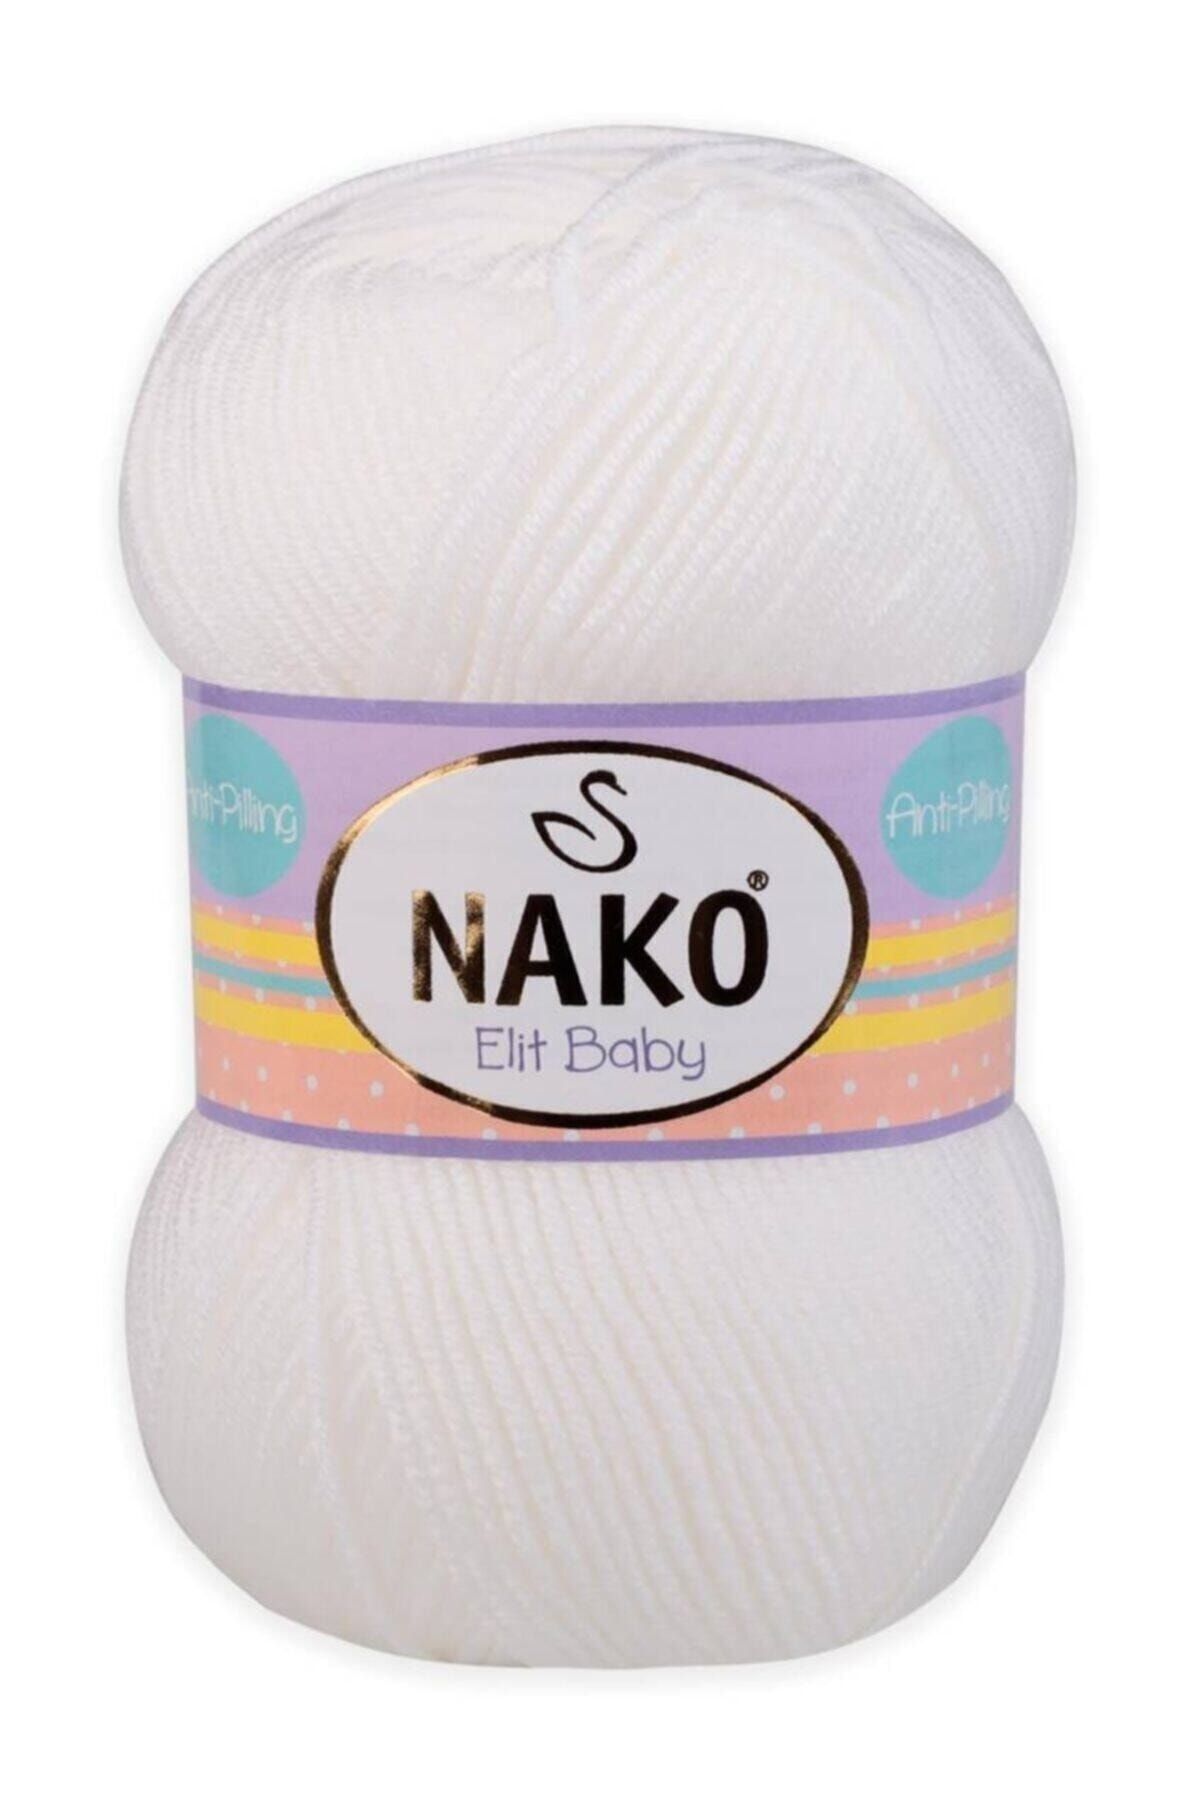 Nako Elit Baby El Örgü Ipi 100 Gr Bir Adet Fiyatıdır